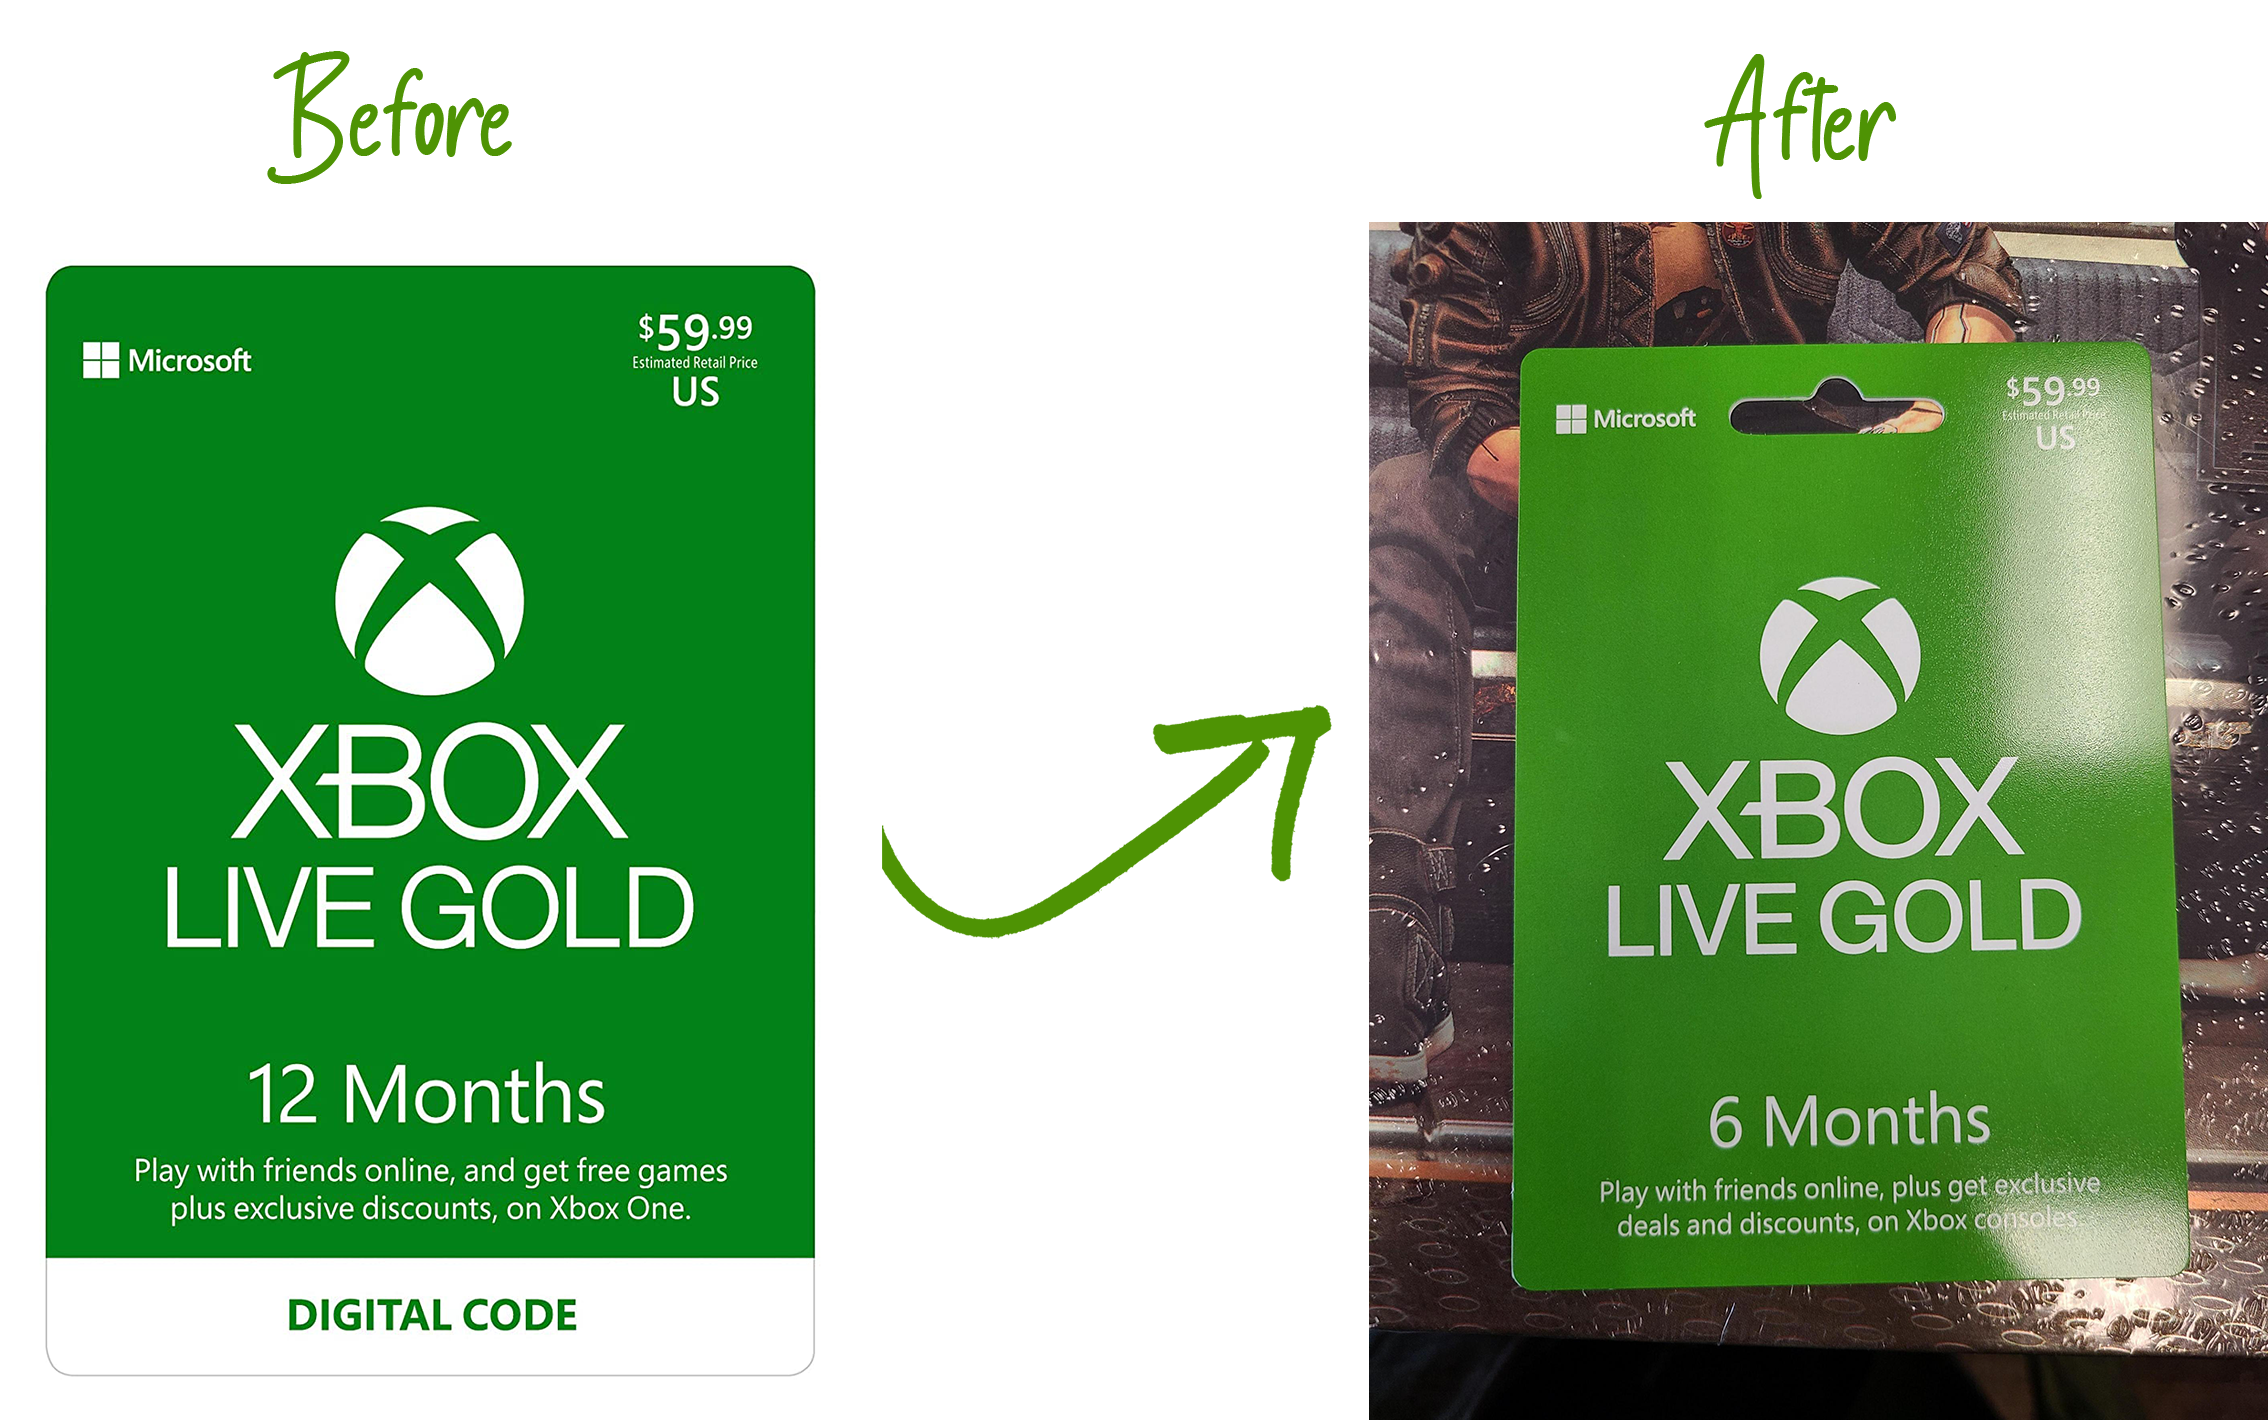 Xbox Live Gold. Xbox Live Gold Xbox 360 промокод. Подписка Xbox Live Gold. Xbox Live Gold 6 месяцев. Купить месяц подписки xbox